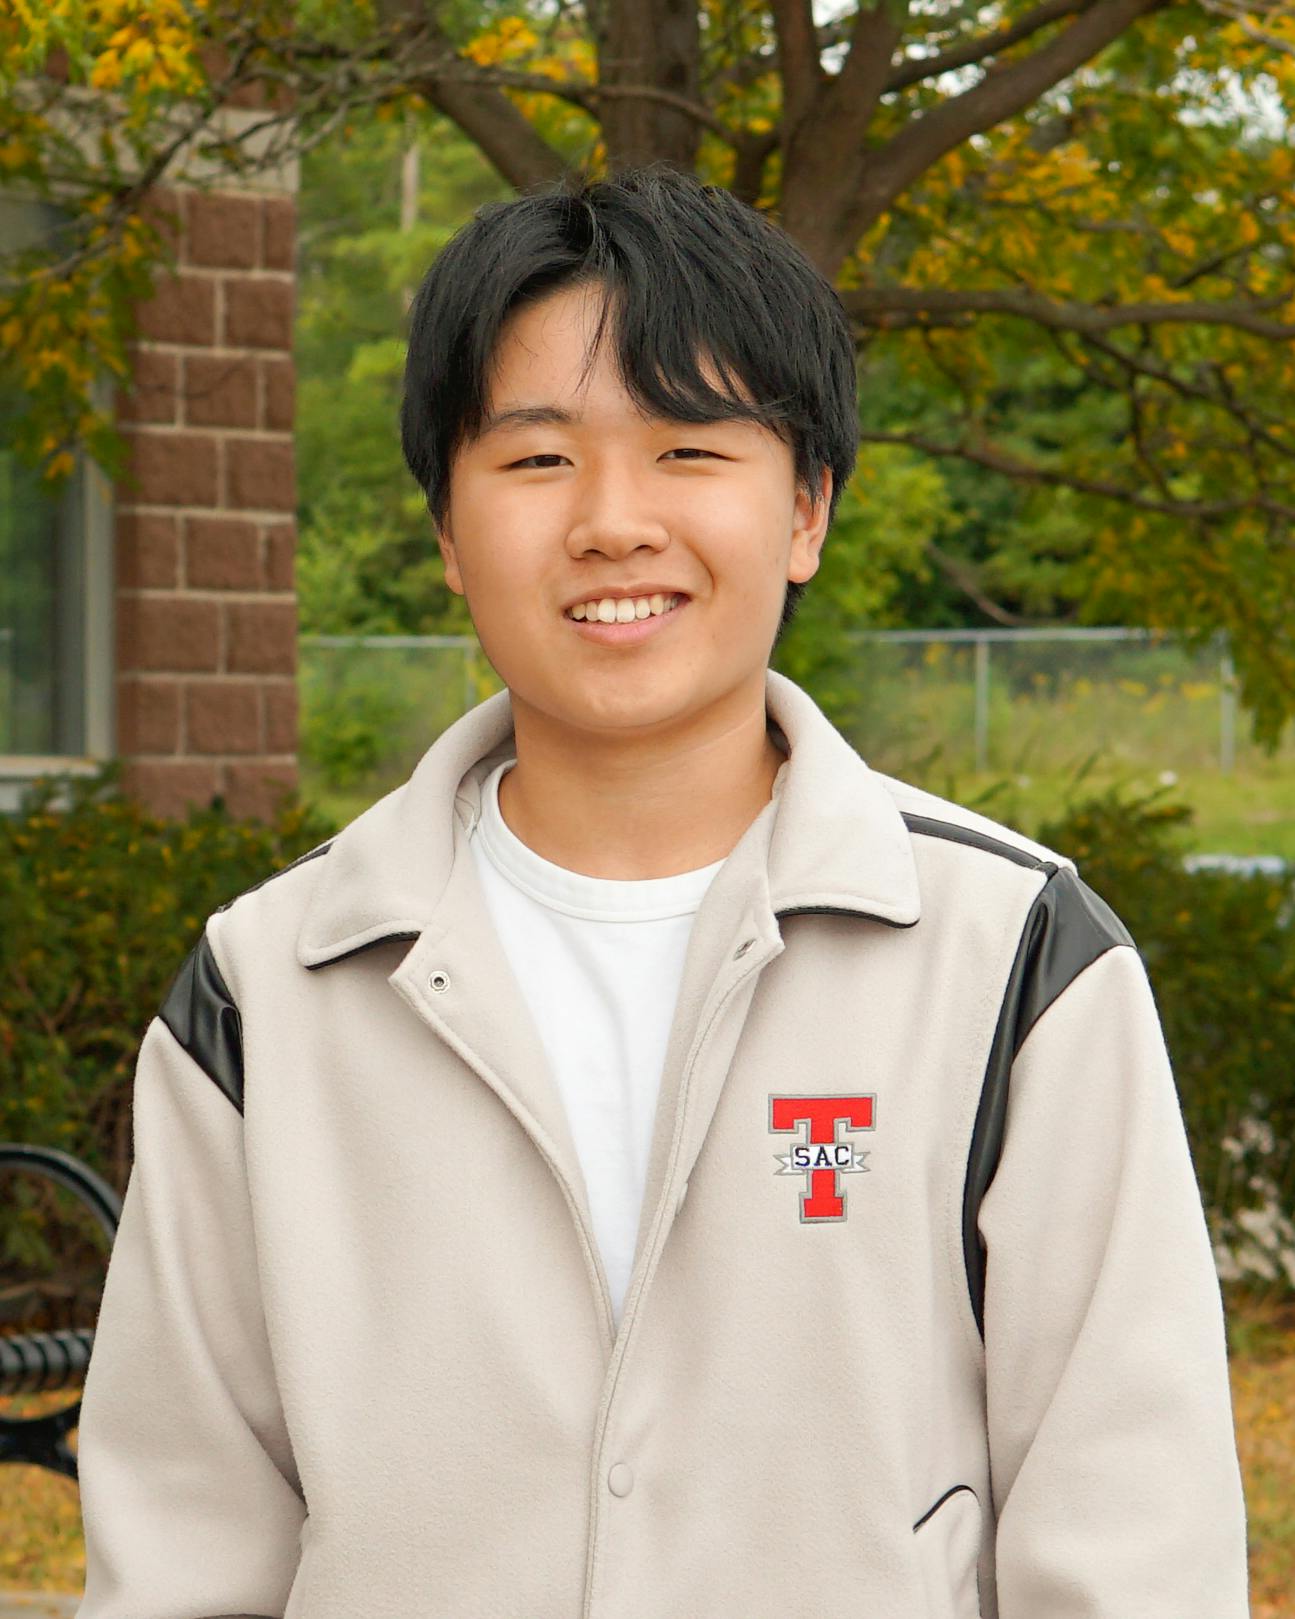 TSAC member Daniel Wang